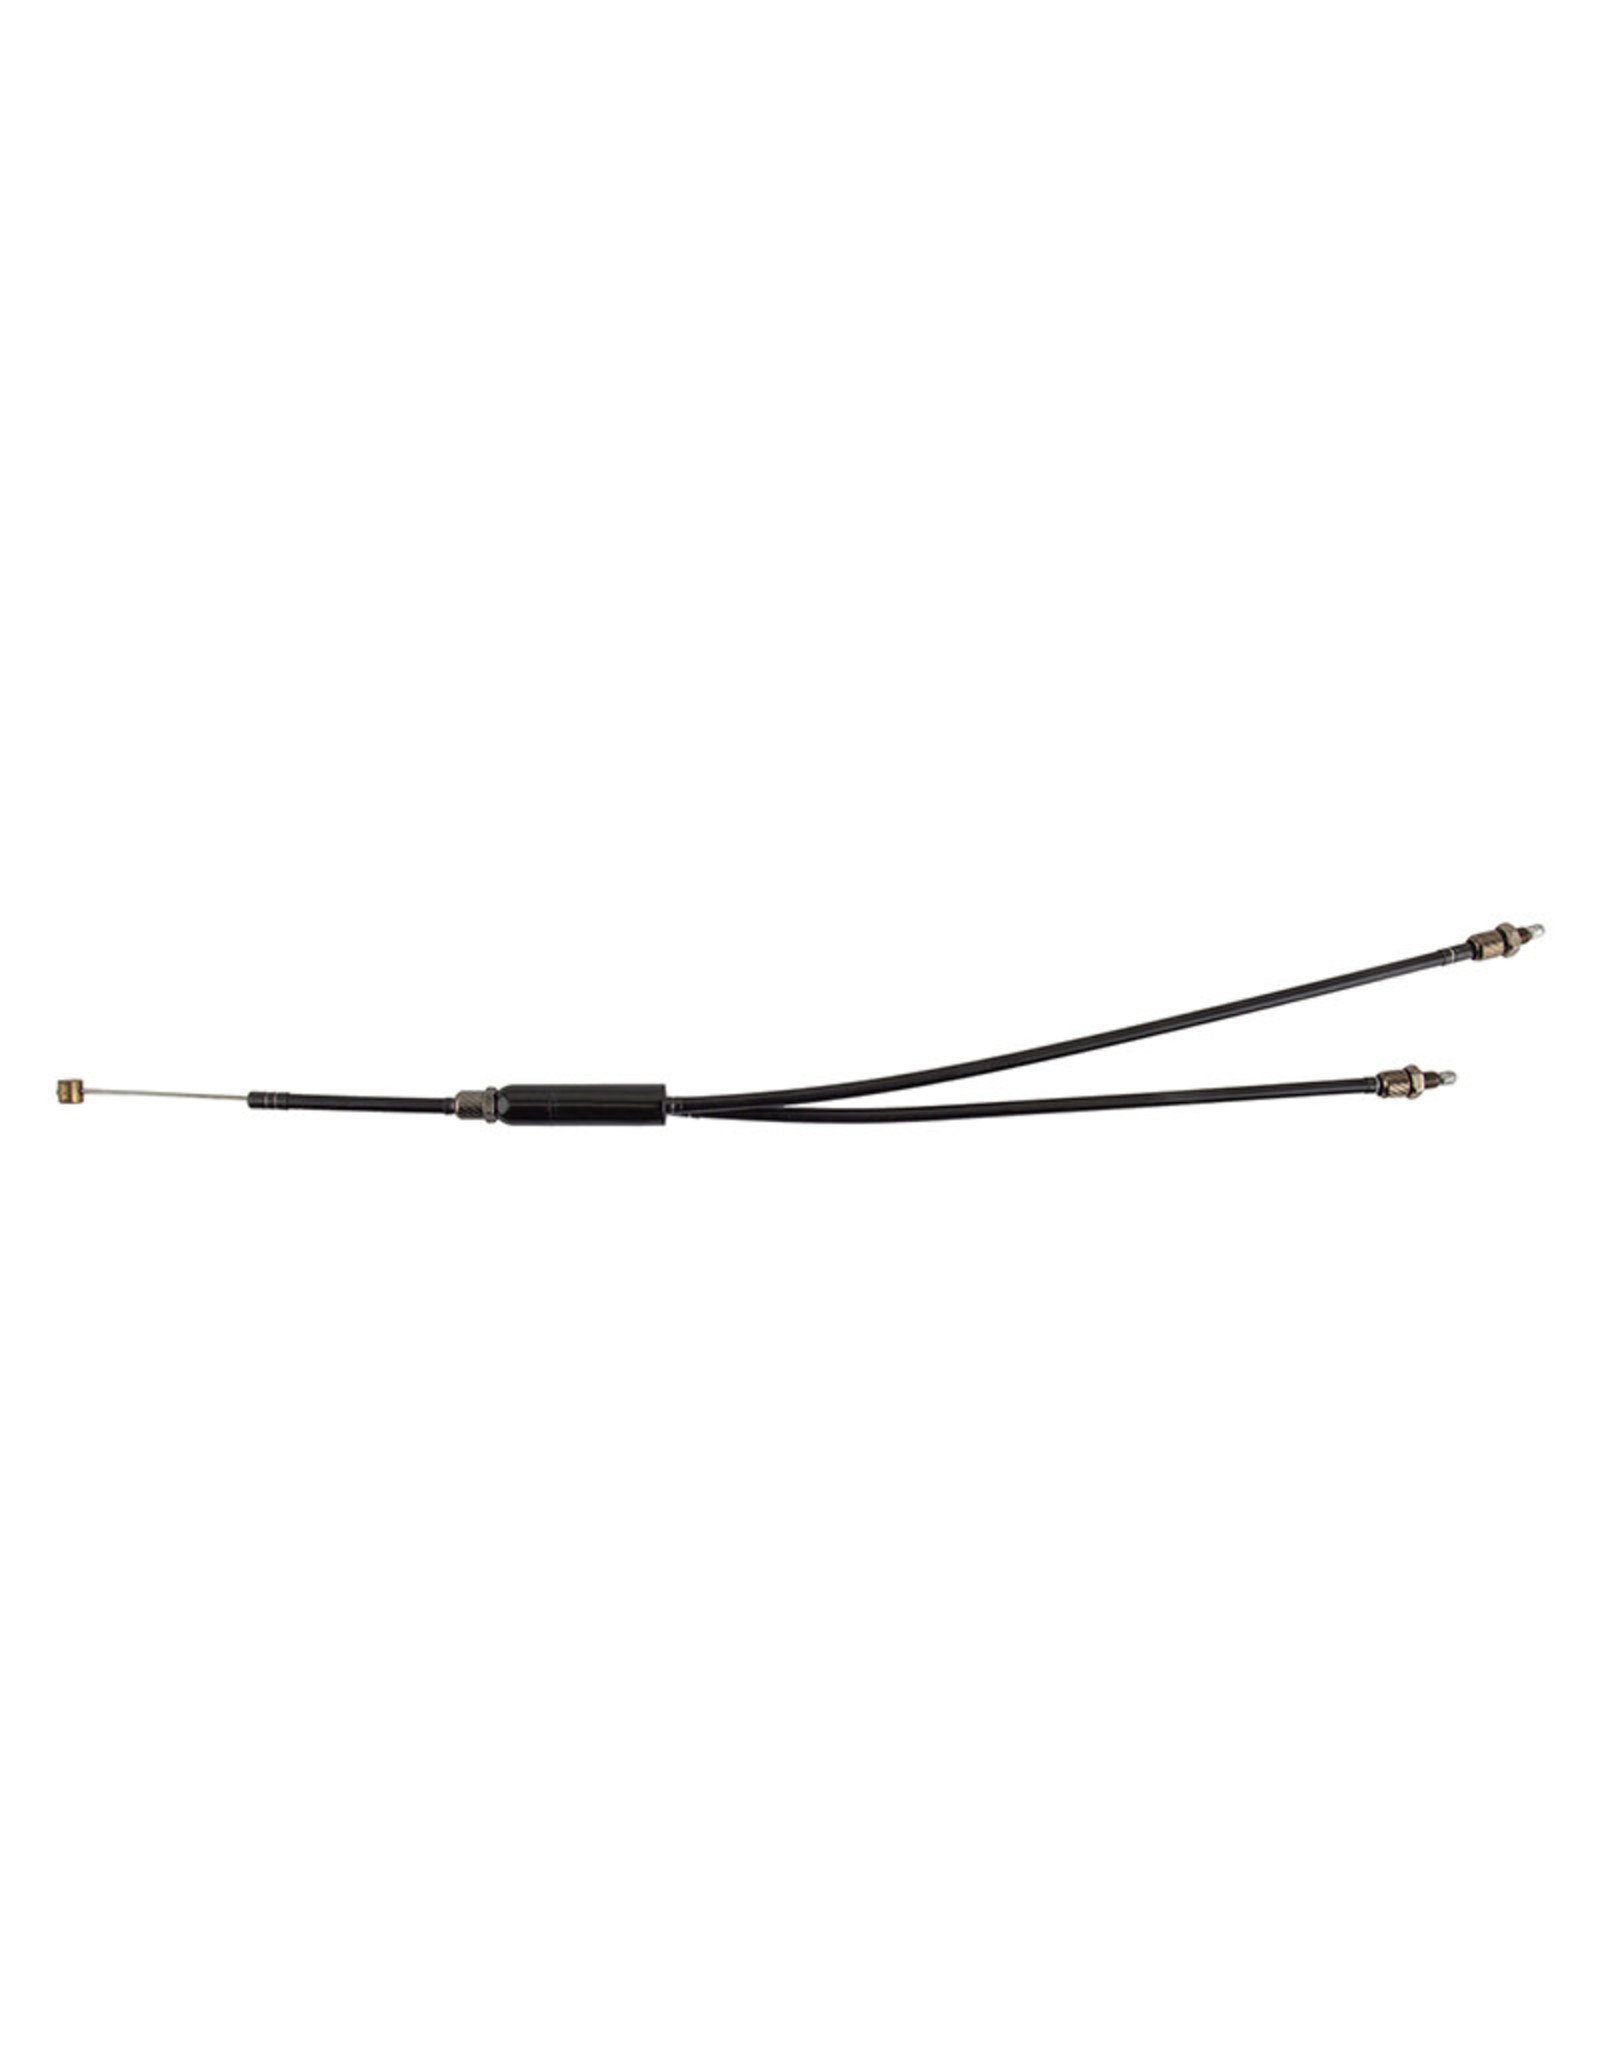 Black Ops Brake Cable Black-Ops Upper Poser 11.0 - 12.5" Black